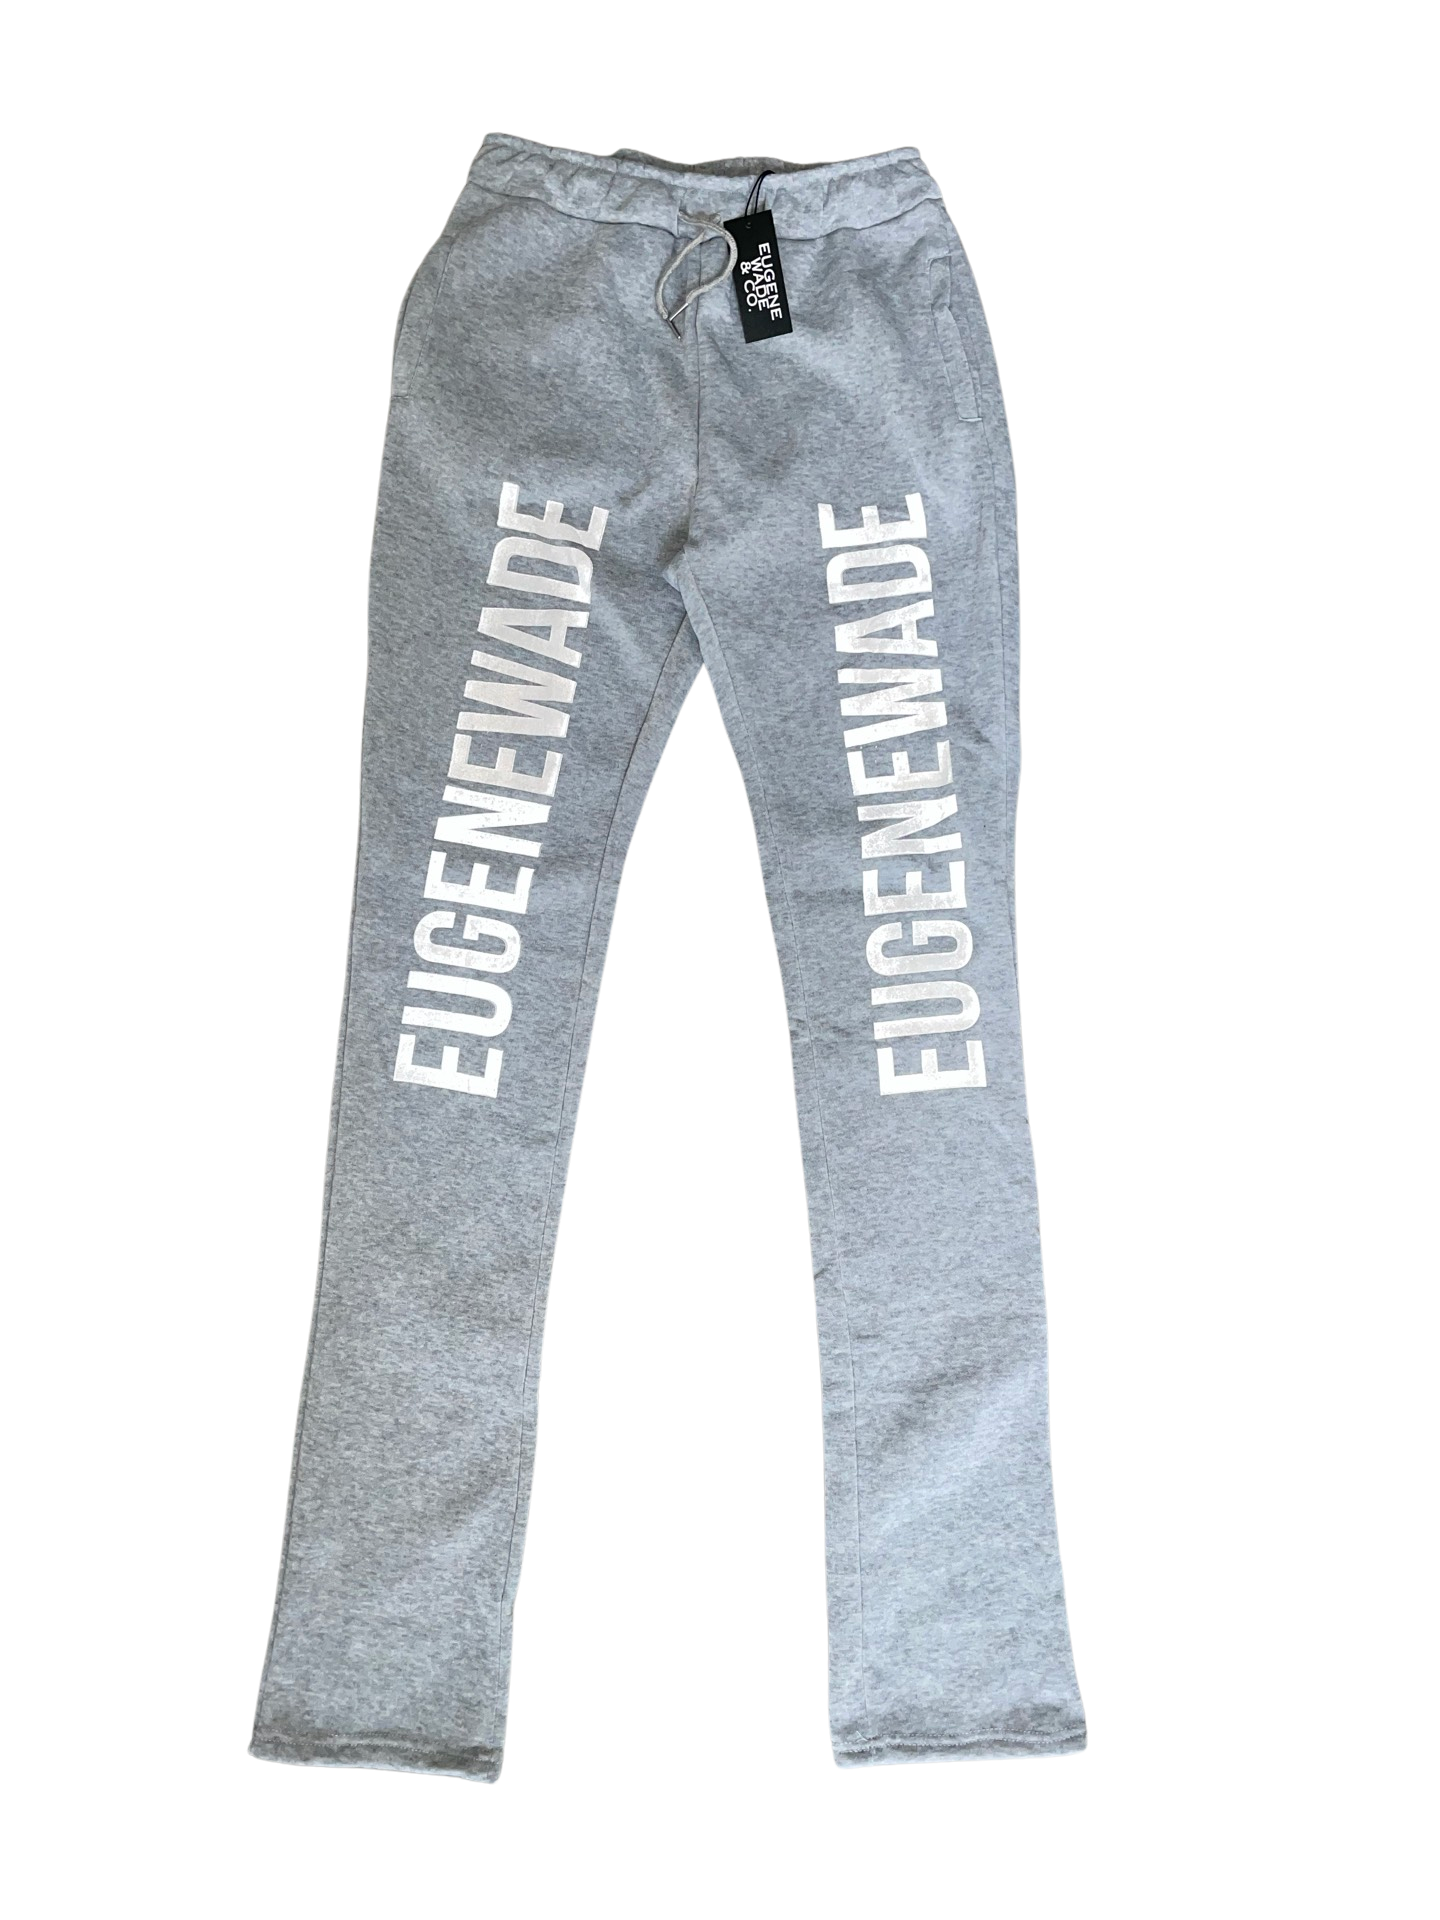 EugeneWade Stacked Pants Sample – EugeneWadeCo